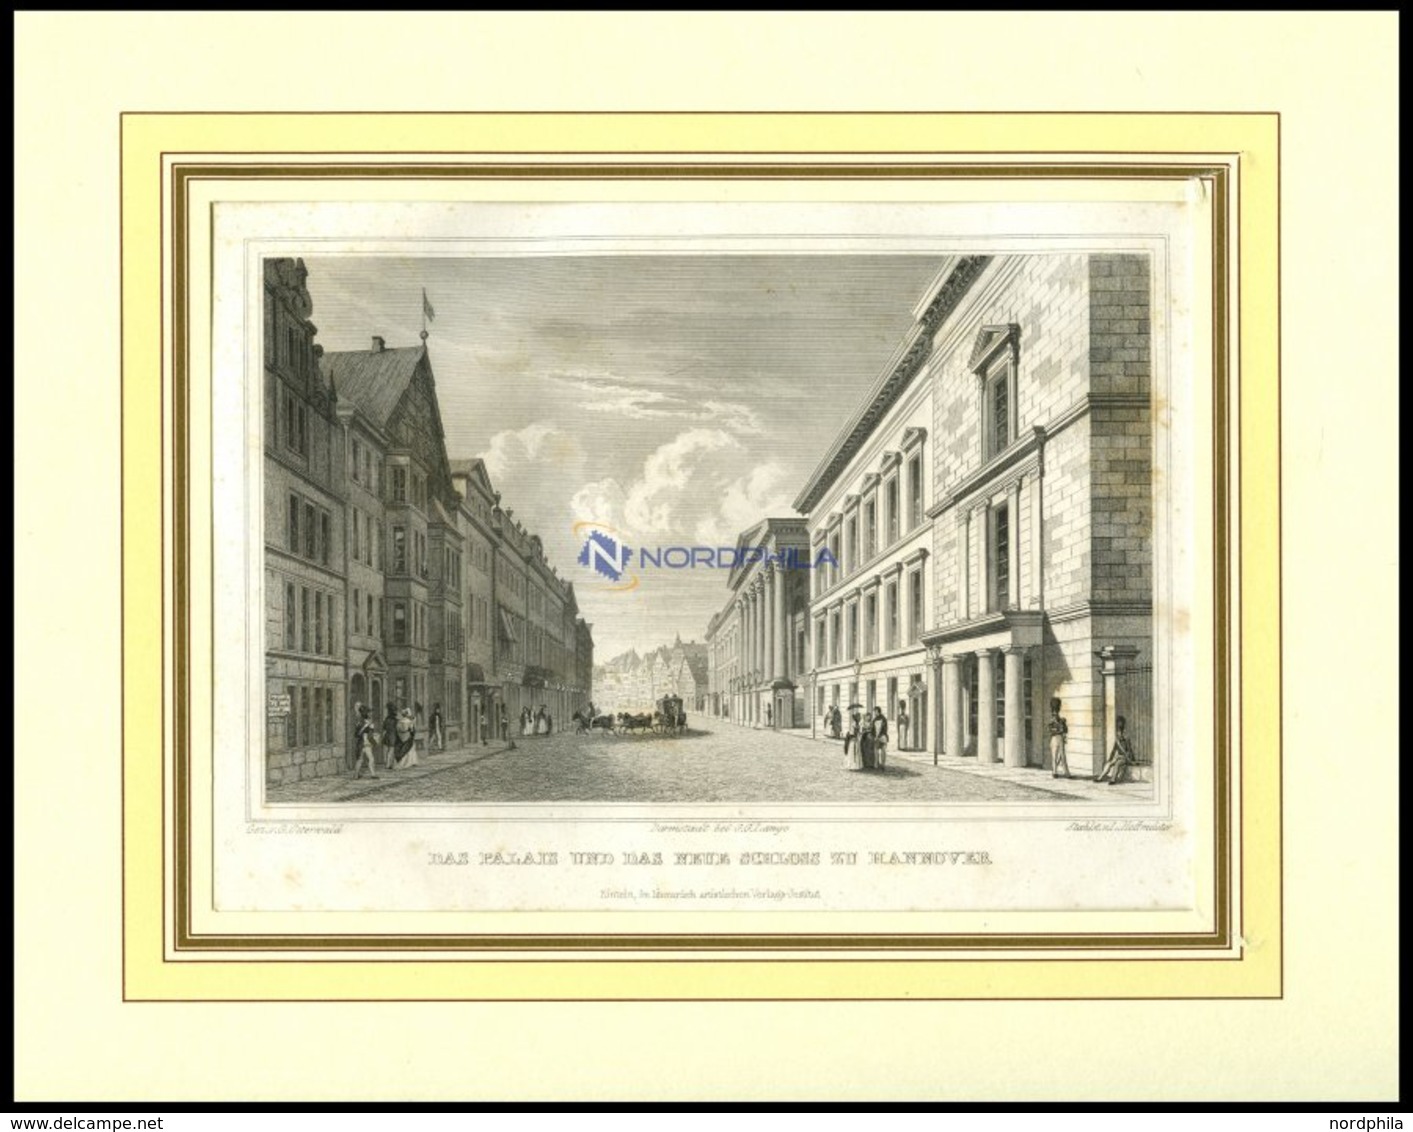 HANNOVER: Das Palais Und Das Neue Schloß, Stahlstich Von Osterwald/Hoffmeister, 1840 - Litografía